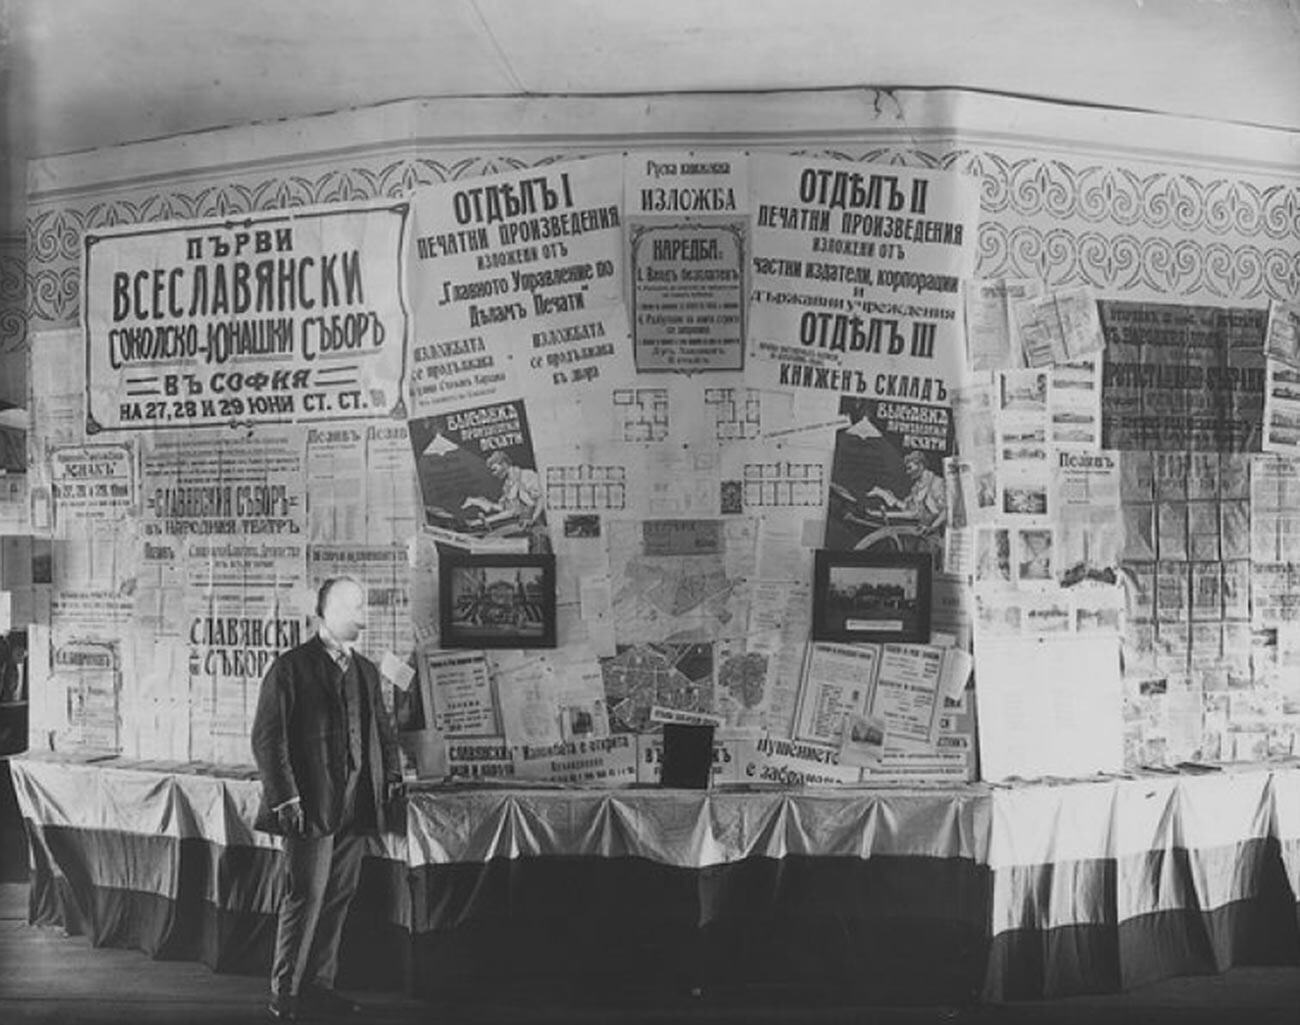 Media exhibition in St. Petersburg, 1910.